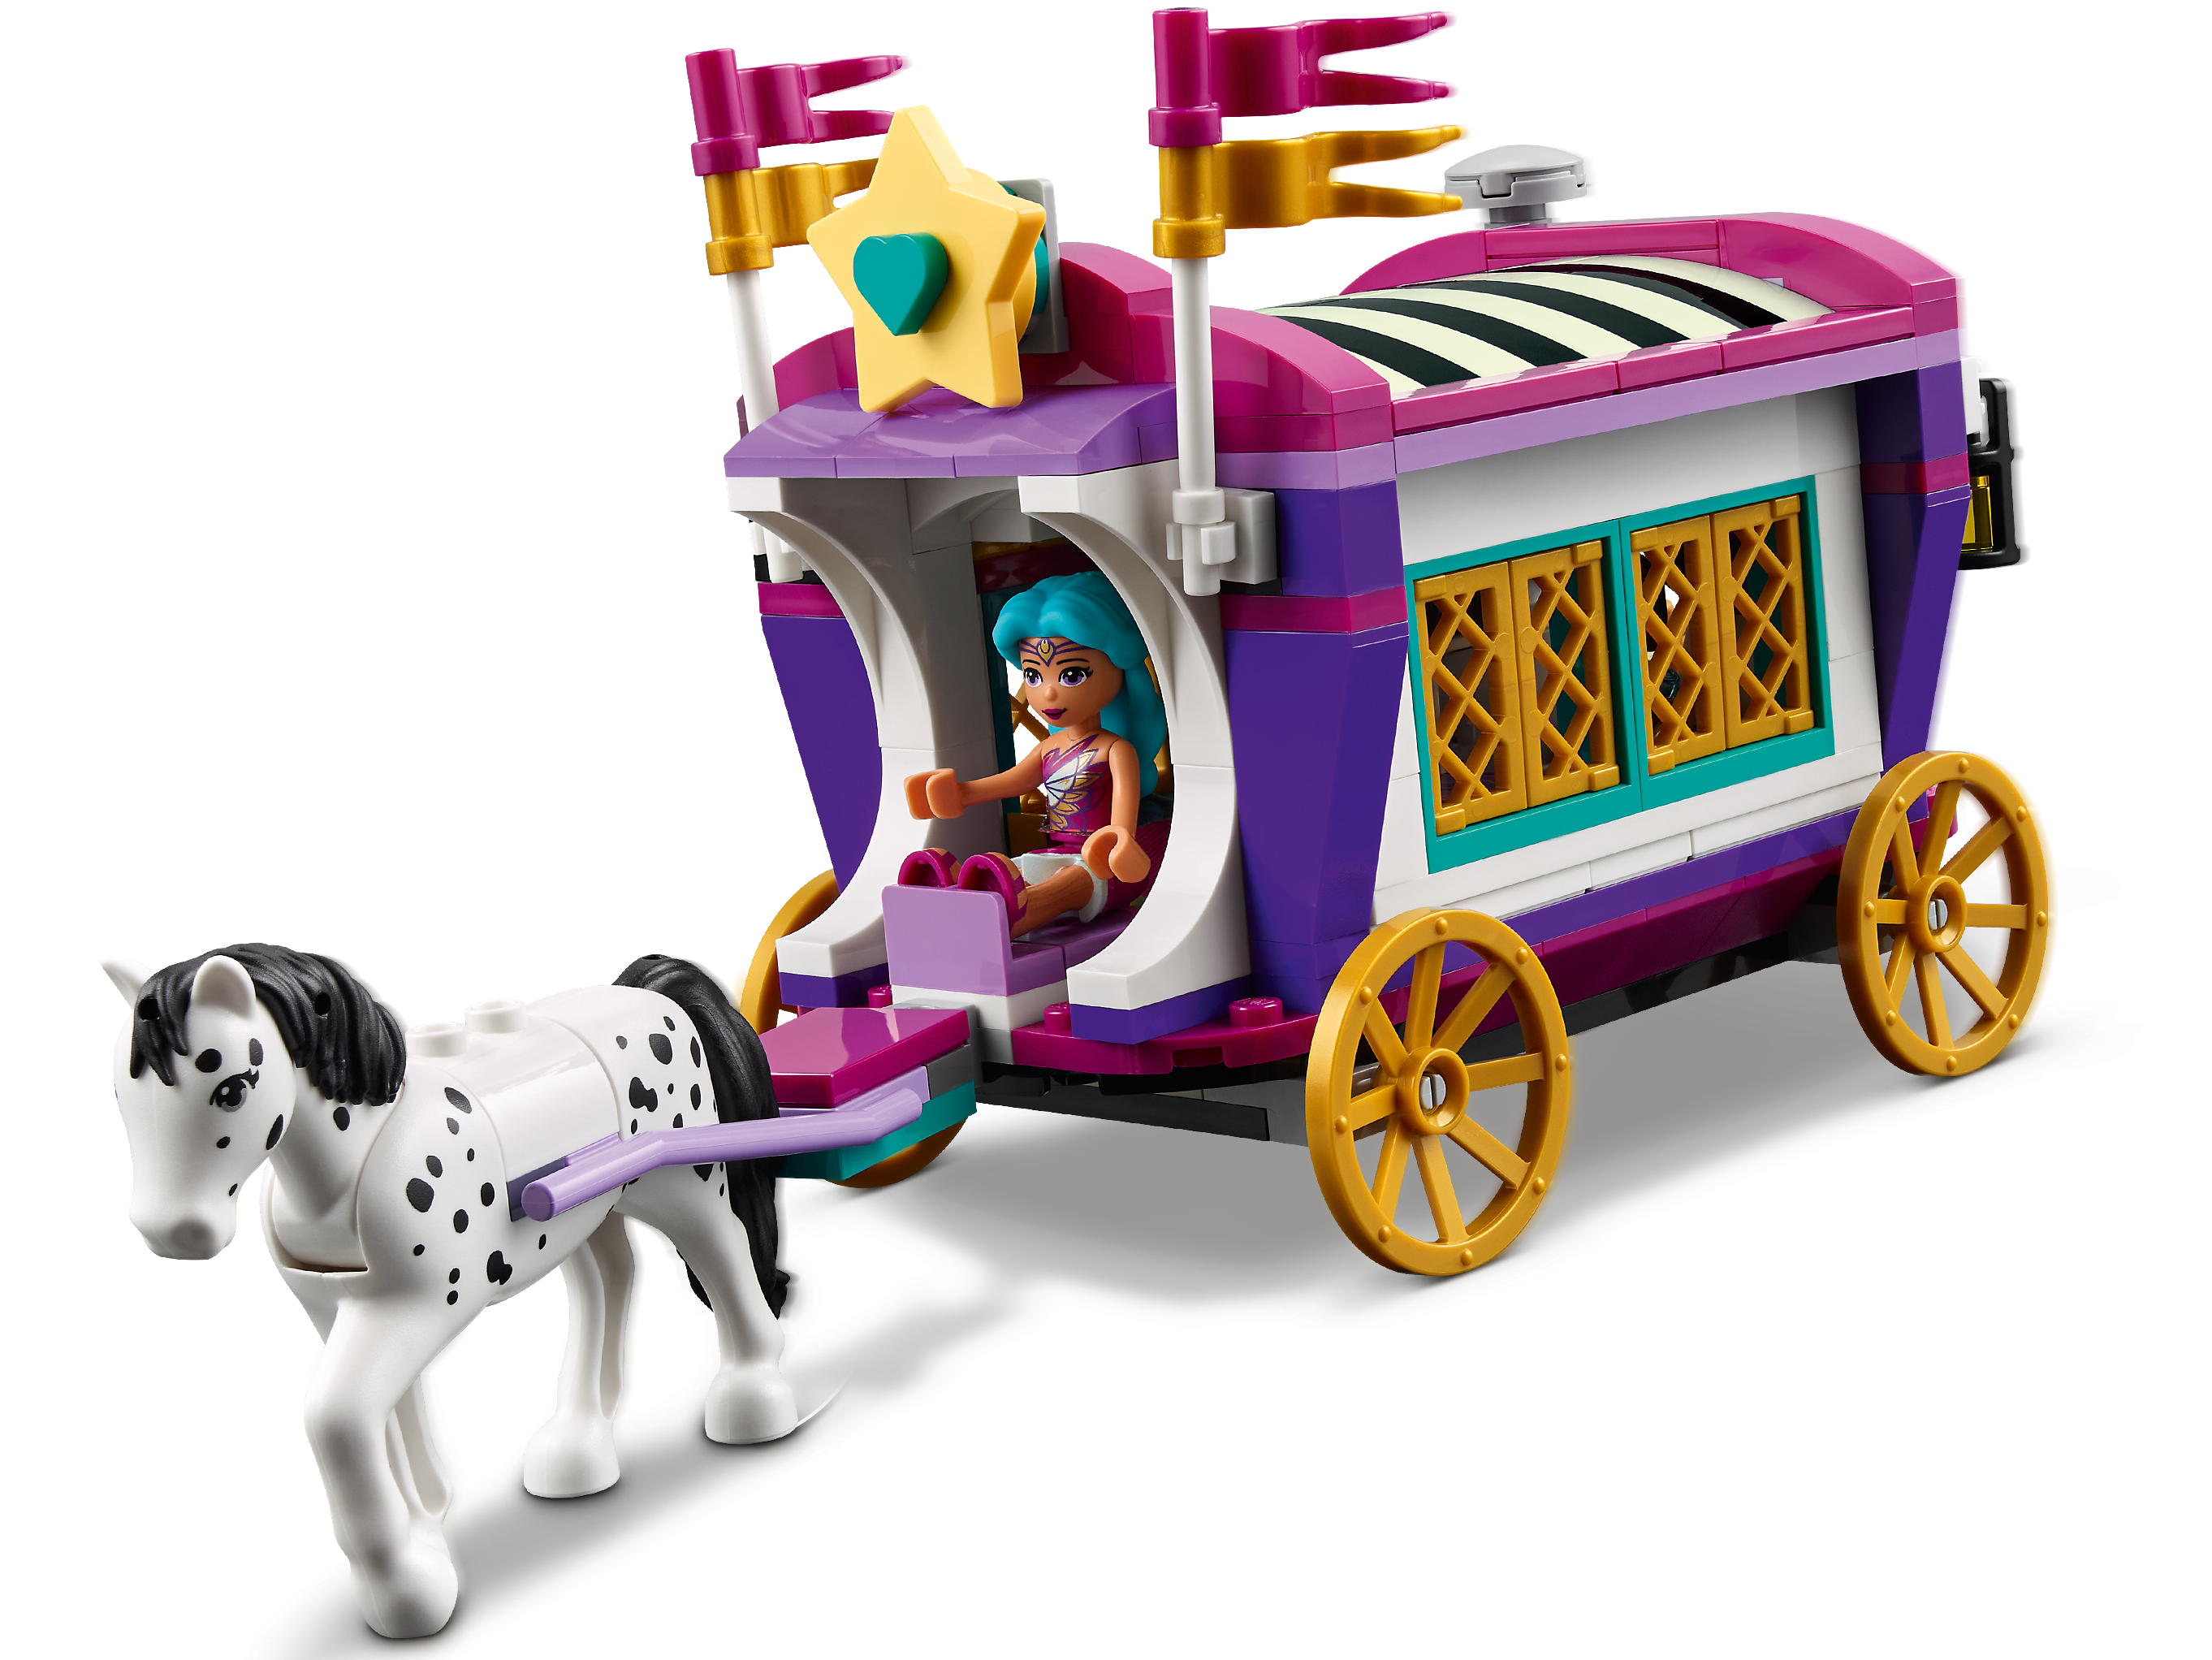 Lego Friends Magical Caravan 41688 - Albagame